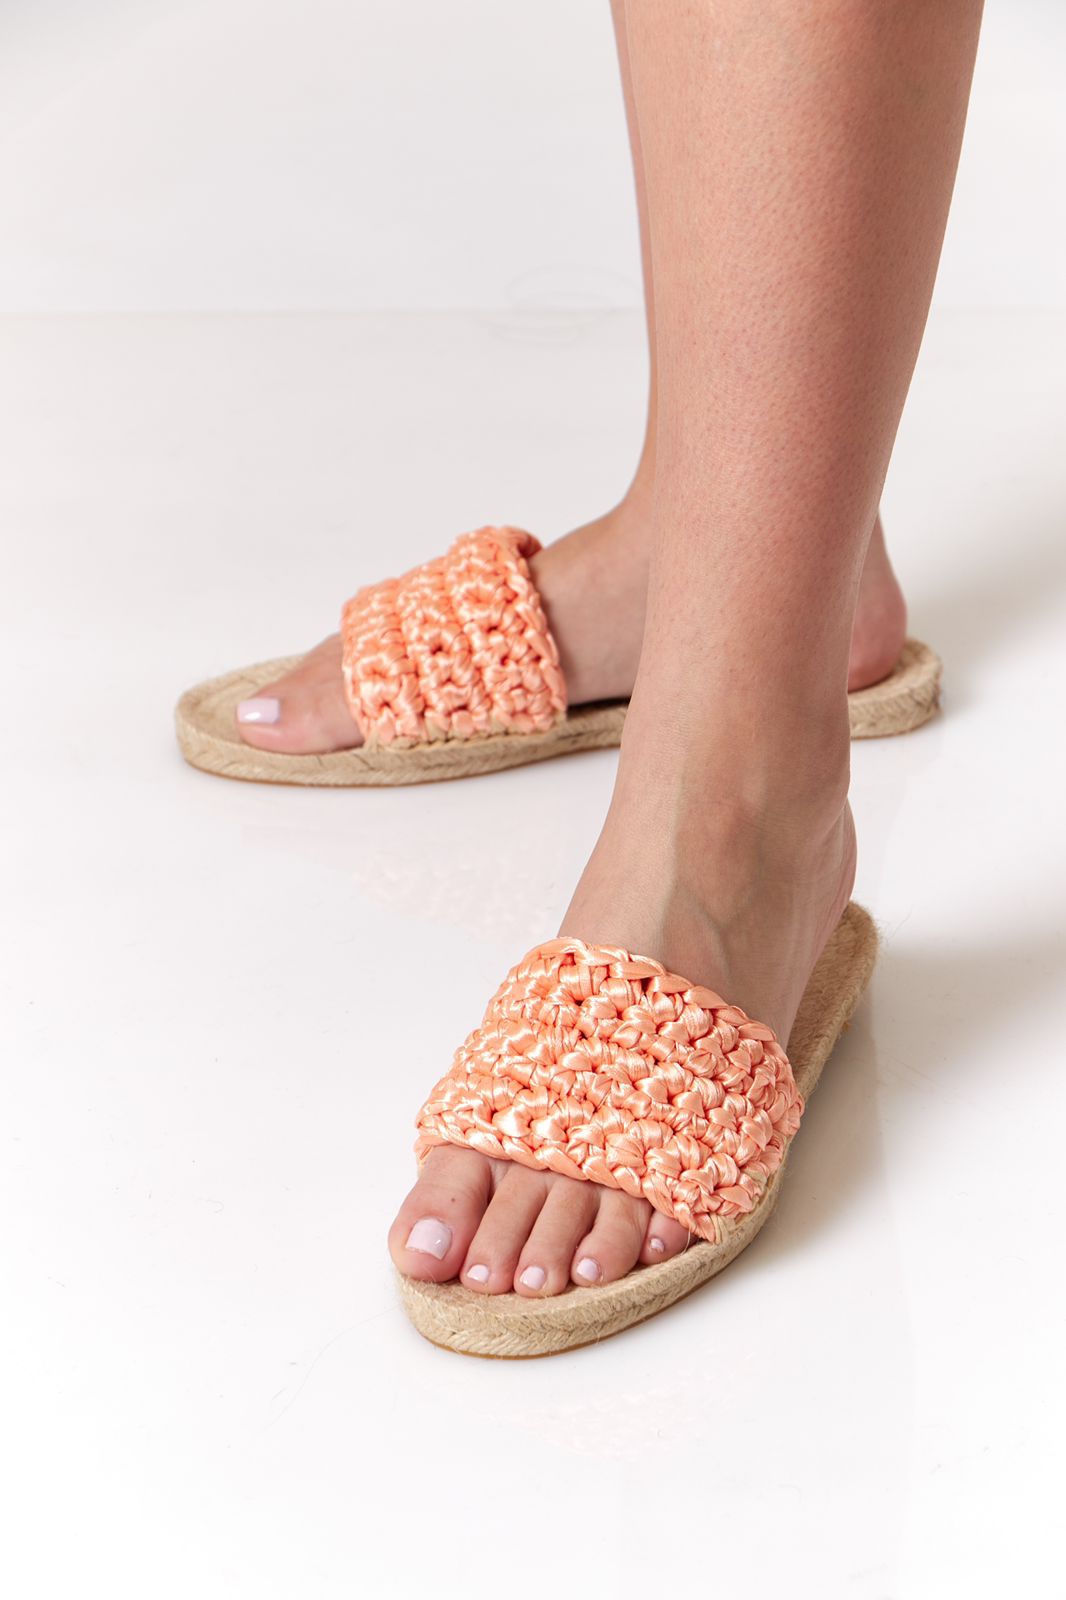 Orange sandals